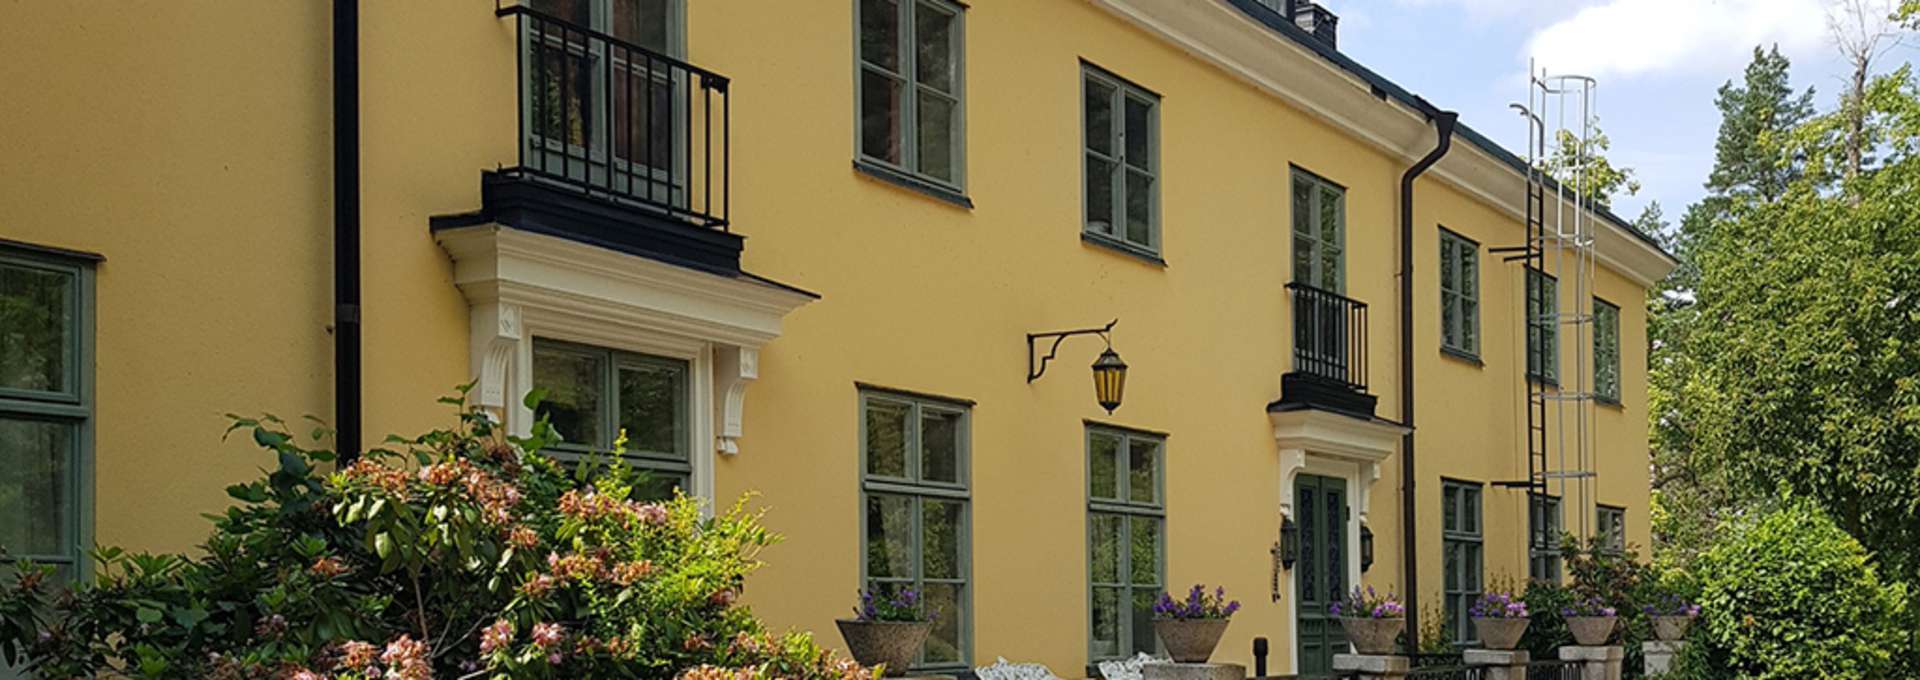 Nyby Herrgård gul stenbyggnad med gröna fönster